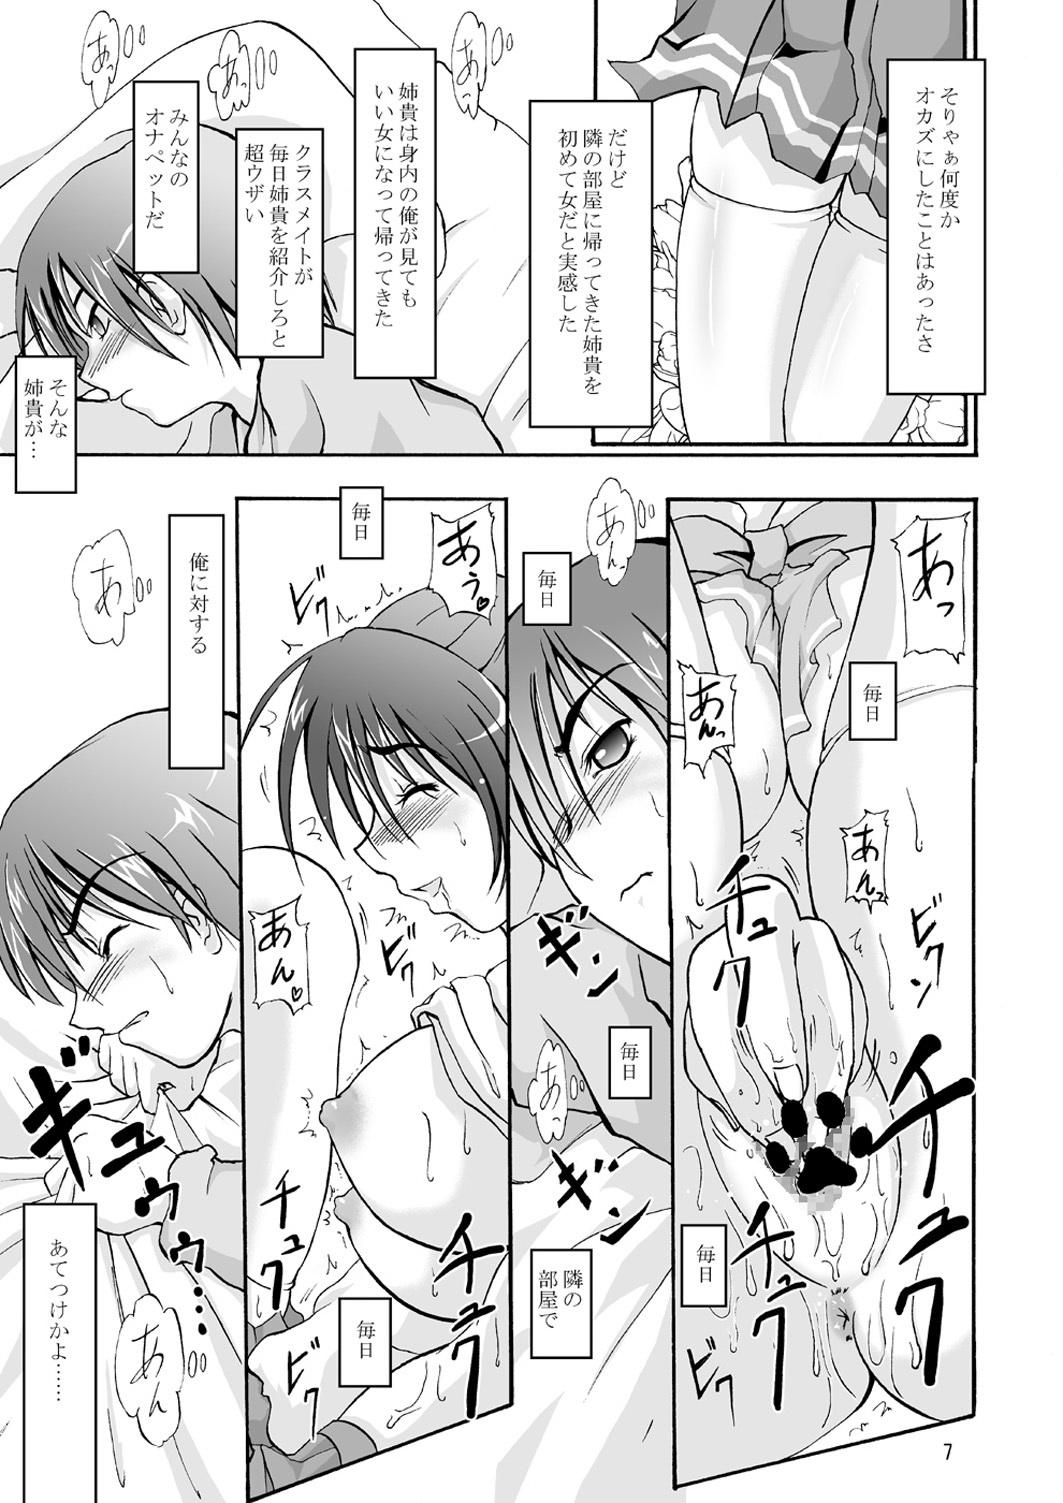 Kiss DoHearts 3 Tama-chan of Joytoy - Toheart2 Nude - Page 7